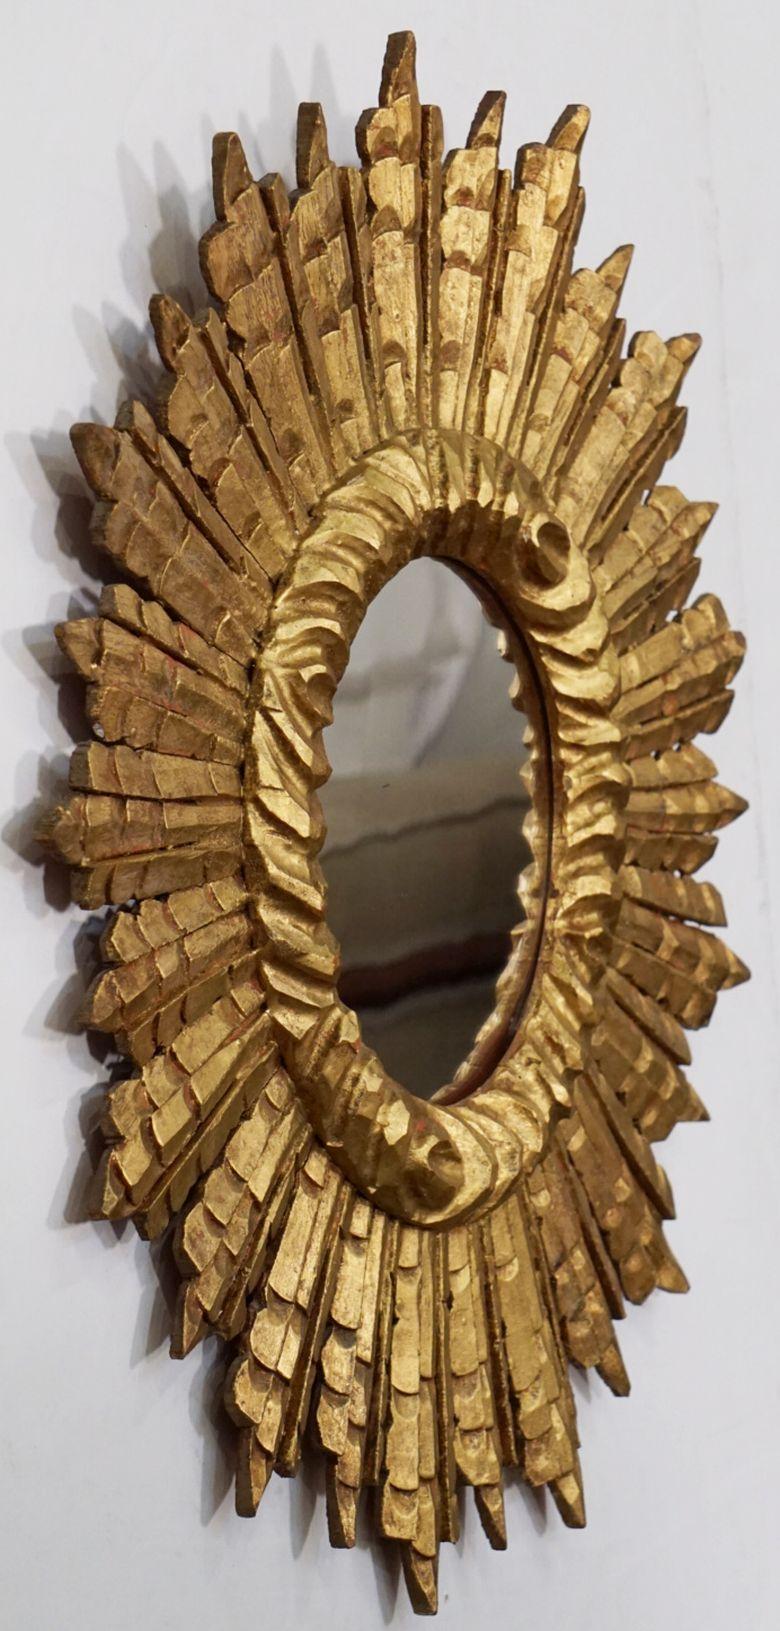 Ein feiner großer französischer Starburst- oder Sunburst-Spiegel mit einer tief geschnitzten Lünette mit einer Masse von vergoldeten Strahlen und der originalen Spiegelplatte.

Abmessungen: Durchmesser von 24 Zoll